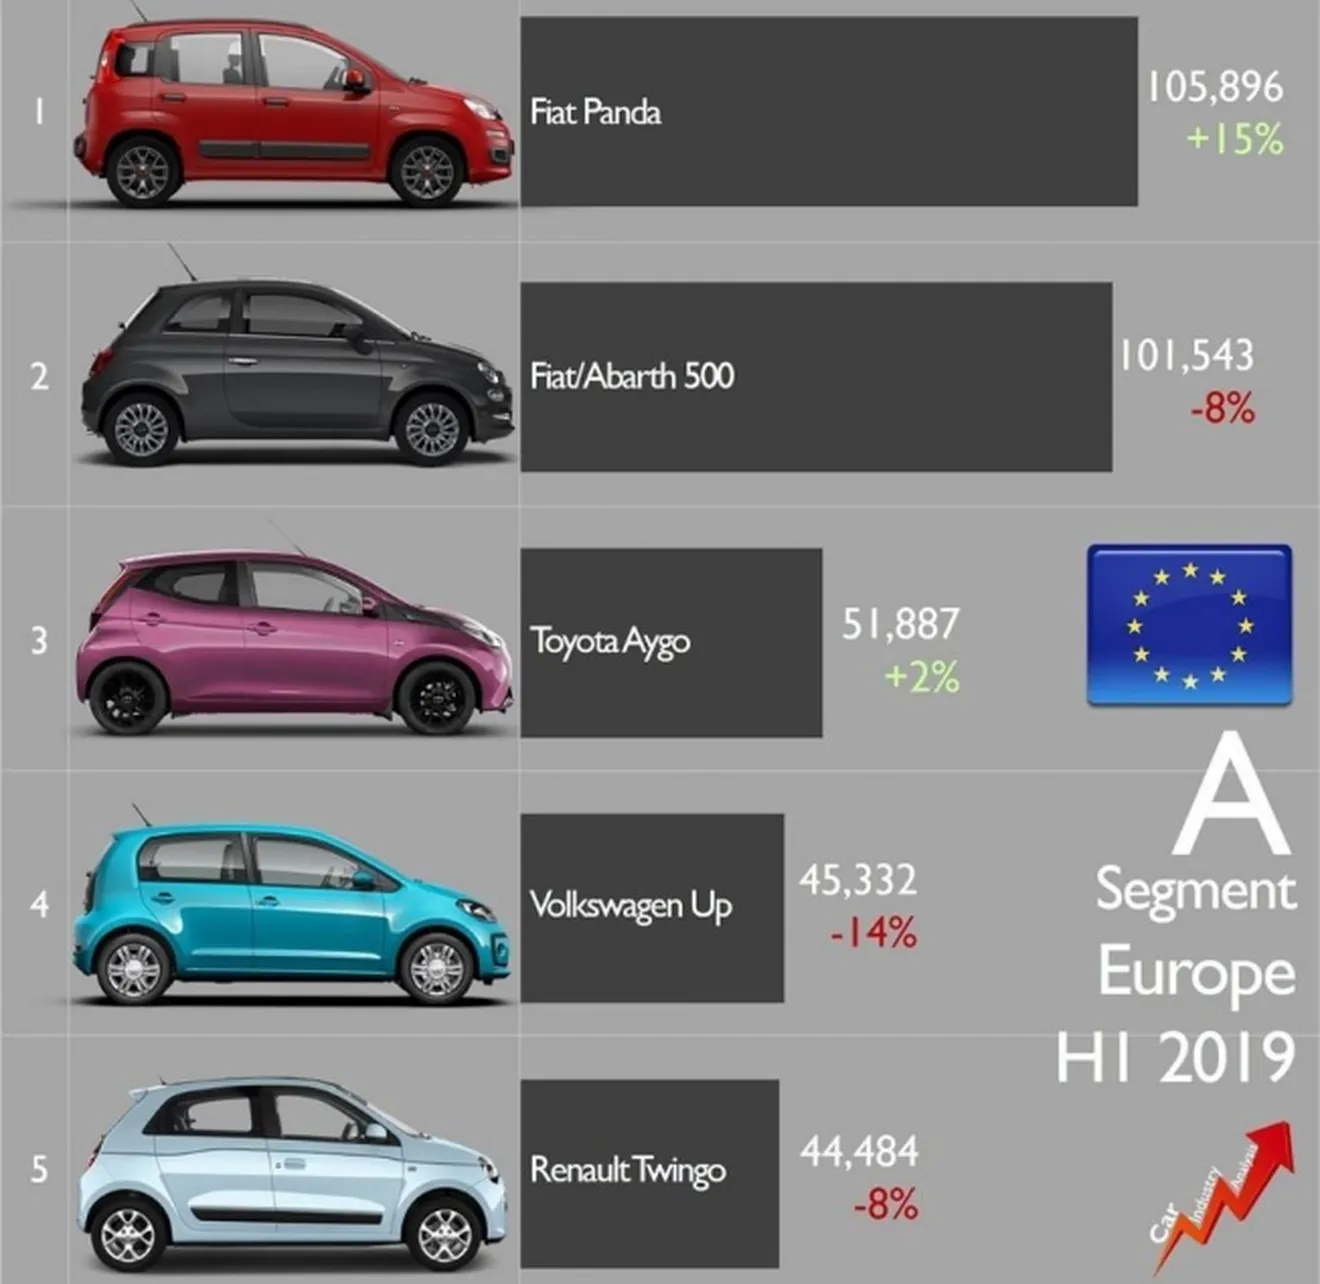 Ventas de Fiat en el segmento A en Europa en 2019